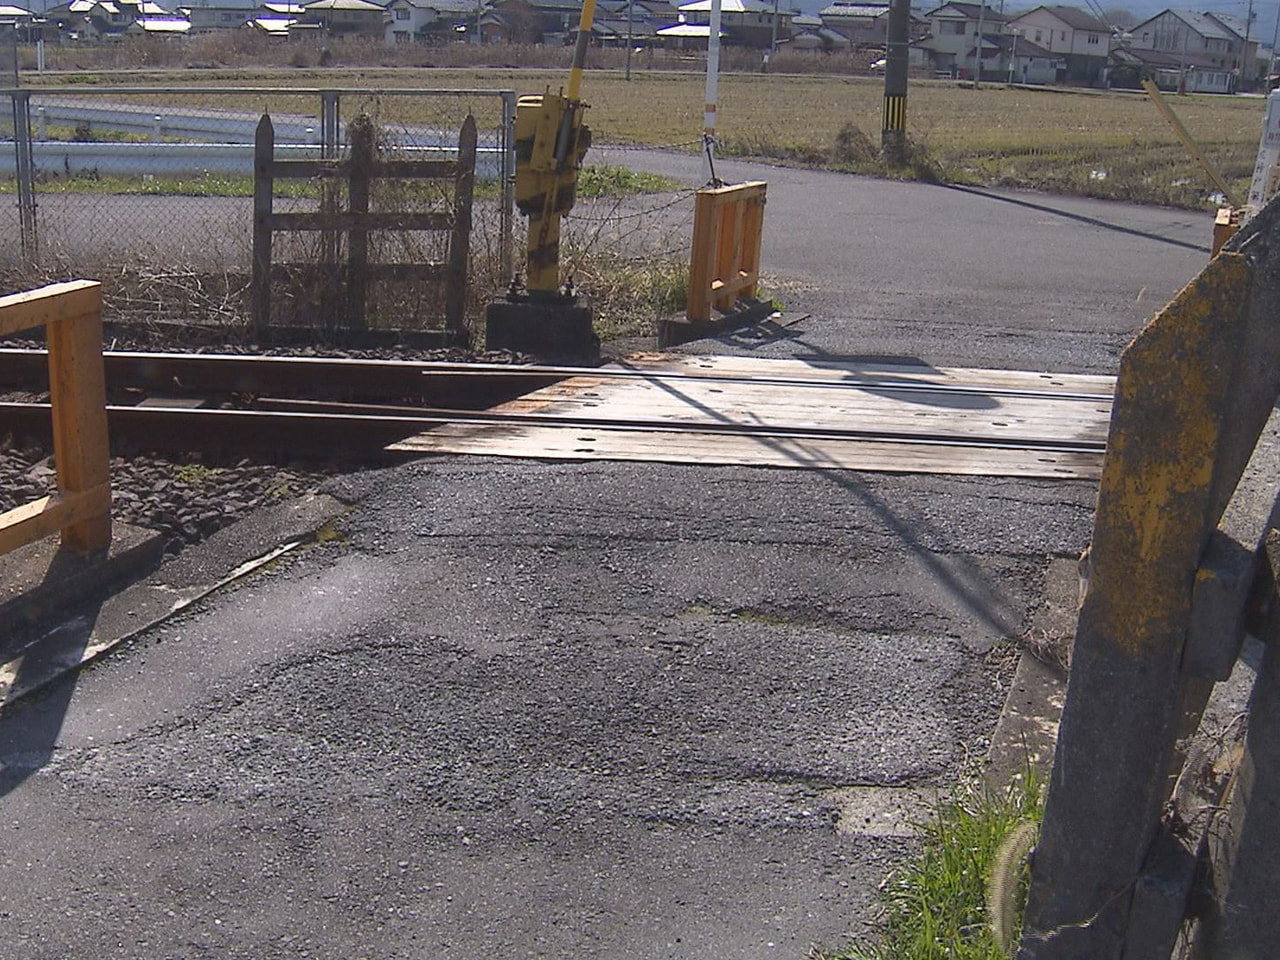 ９日朝早く、安八郡神戸町の養老鉄道の踏切内で成人女性が列車にはねられ死亡しました...